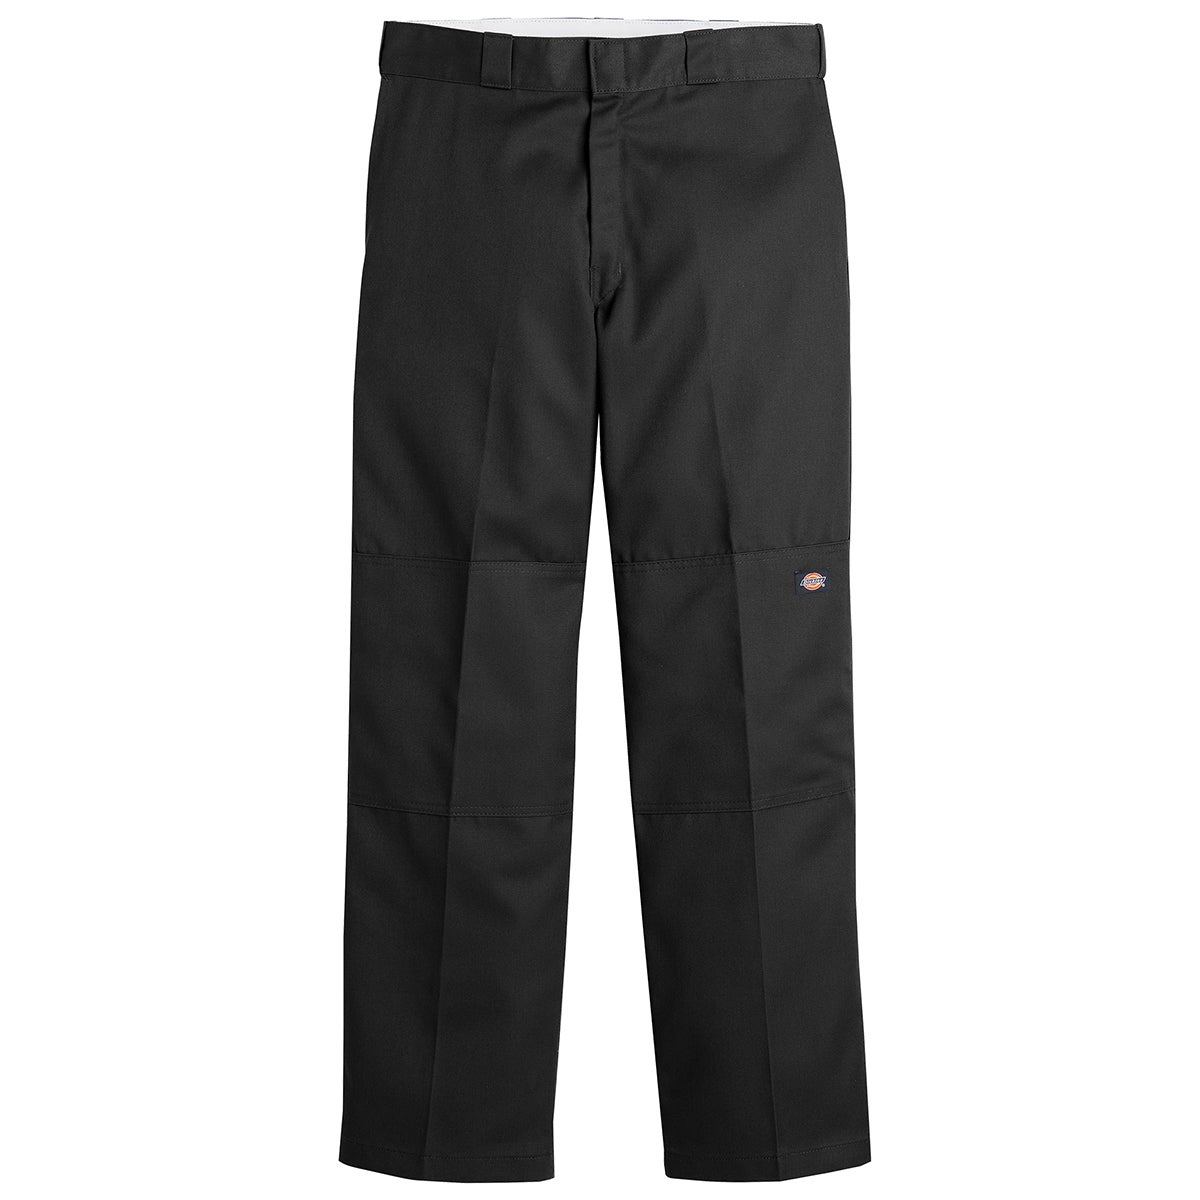 Dickies Loose Fit Double Knee Workpant in Black | Boardertown